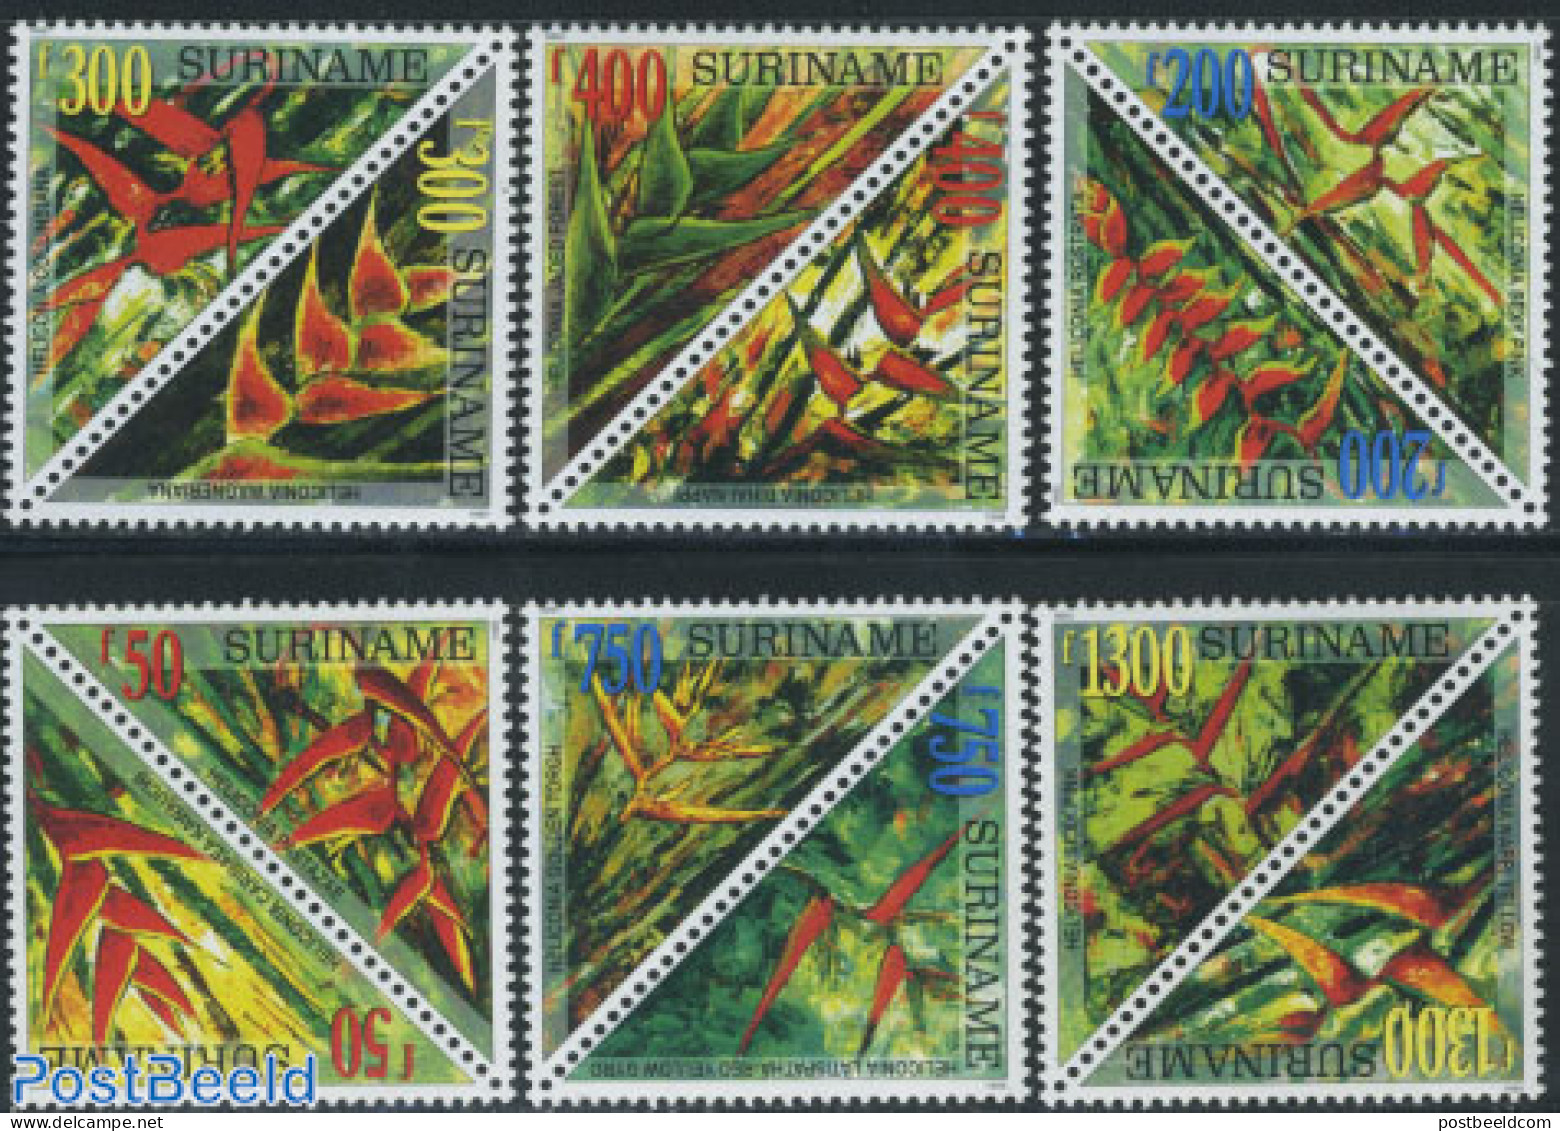 Suriname, Republic 1999 Flowers 6x2v, Mint NH, Nature - Flowers & Plants - Surinam